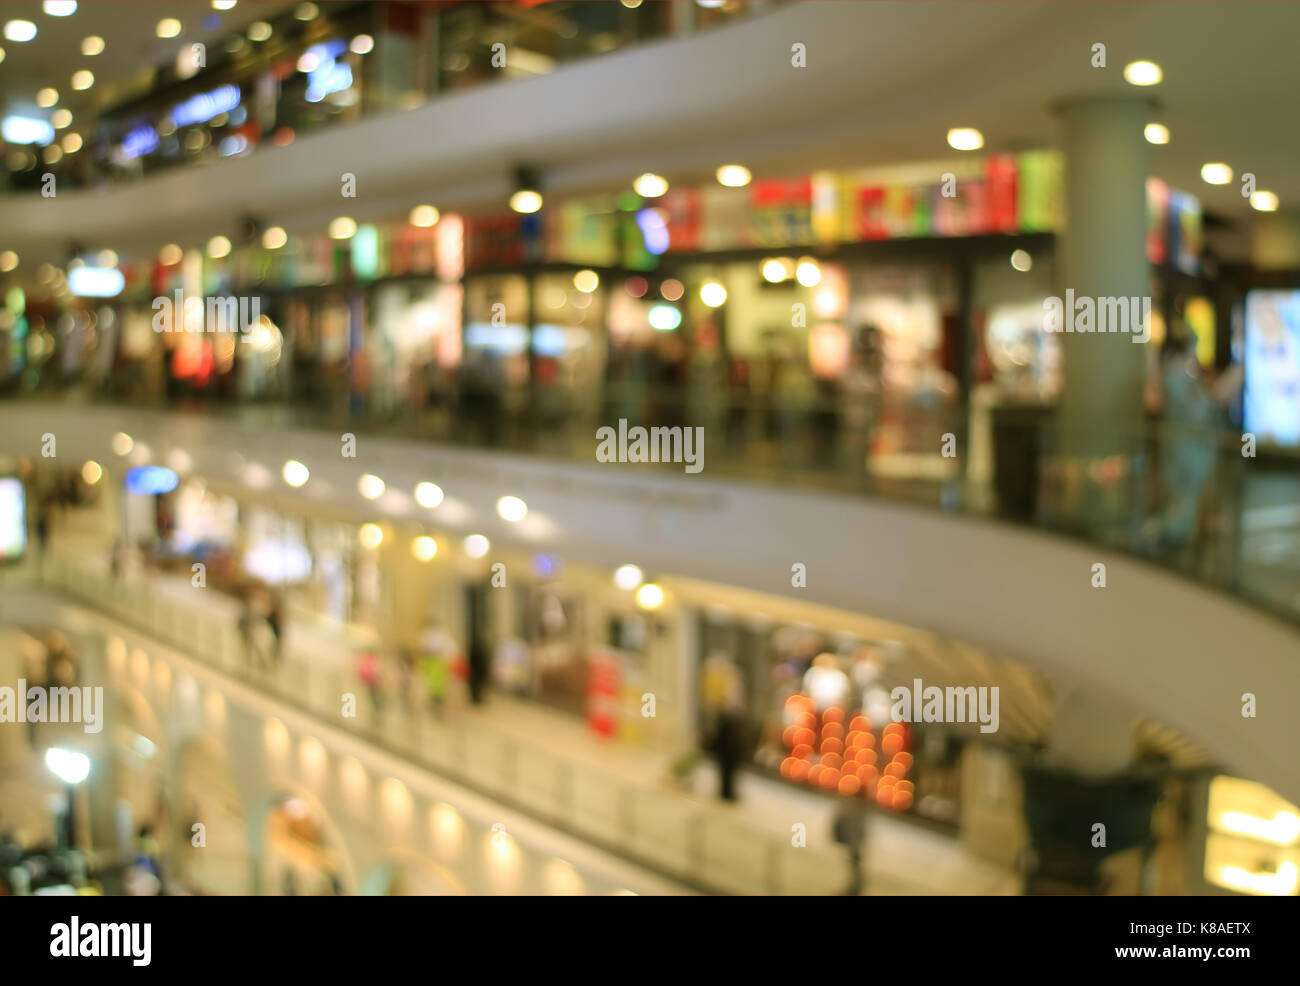 Abstract offuscata e fuori fuoco foto dell'interno di un centro commerciale per lo shopping con luci bokeh di fondo Foto Stock